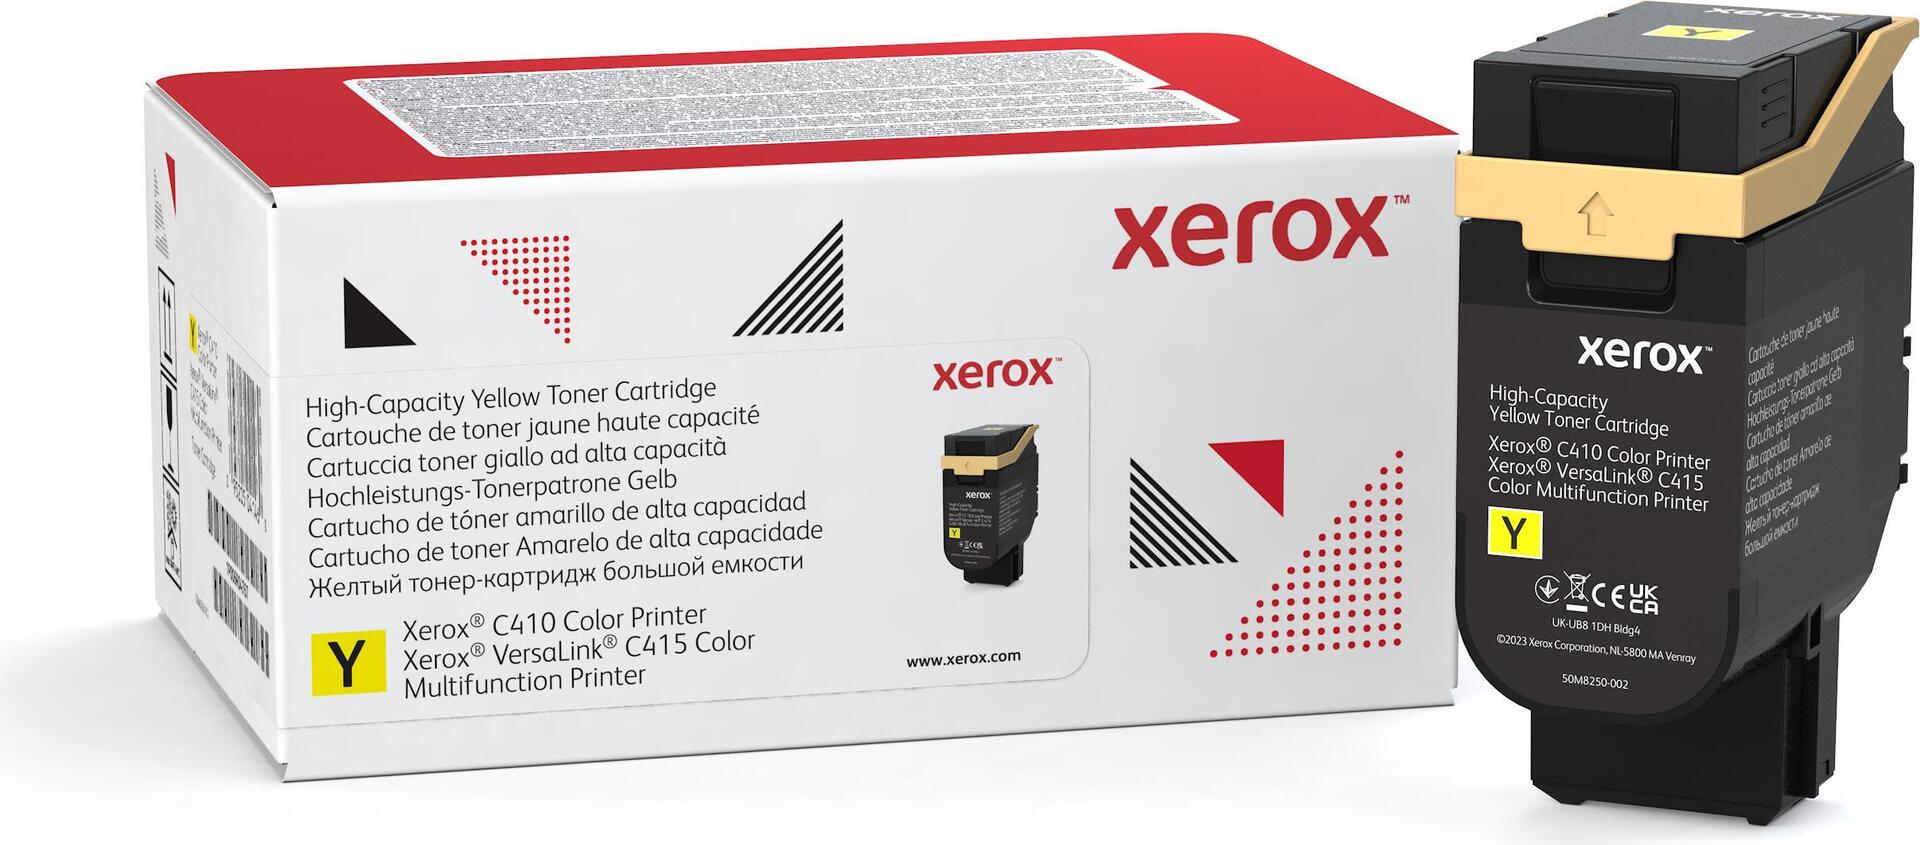 Xerox Mit hoher Kapazität (006R04688)